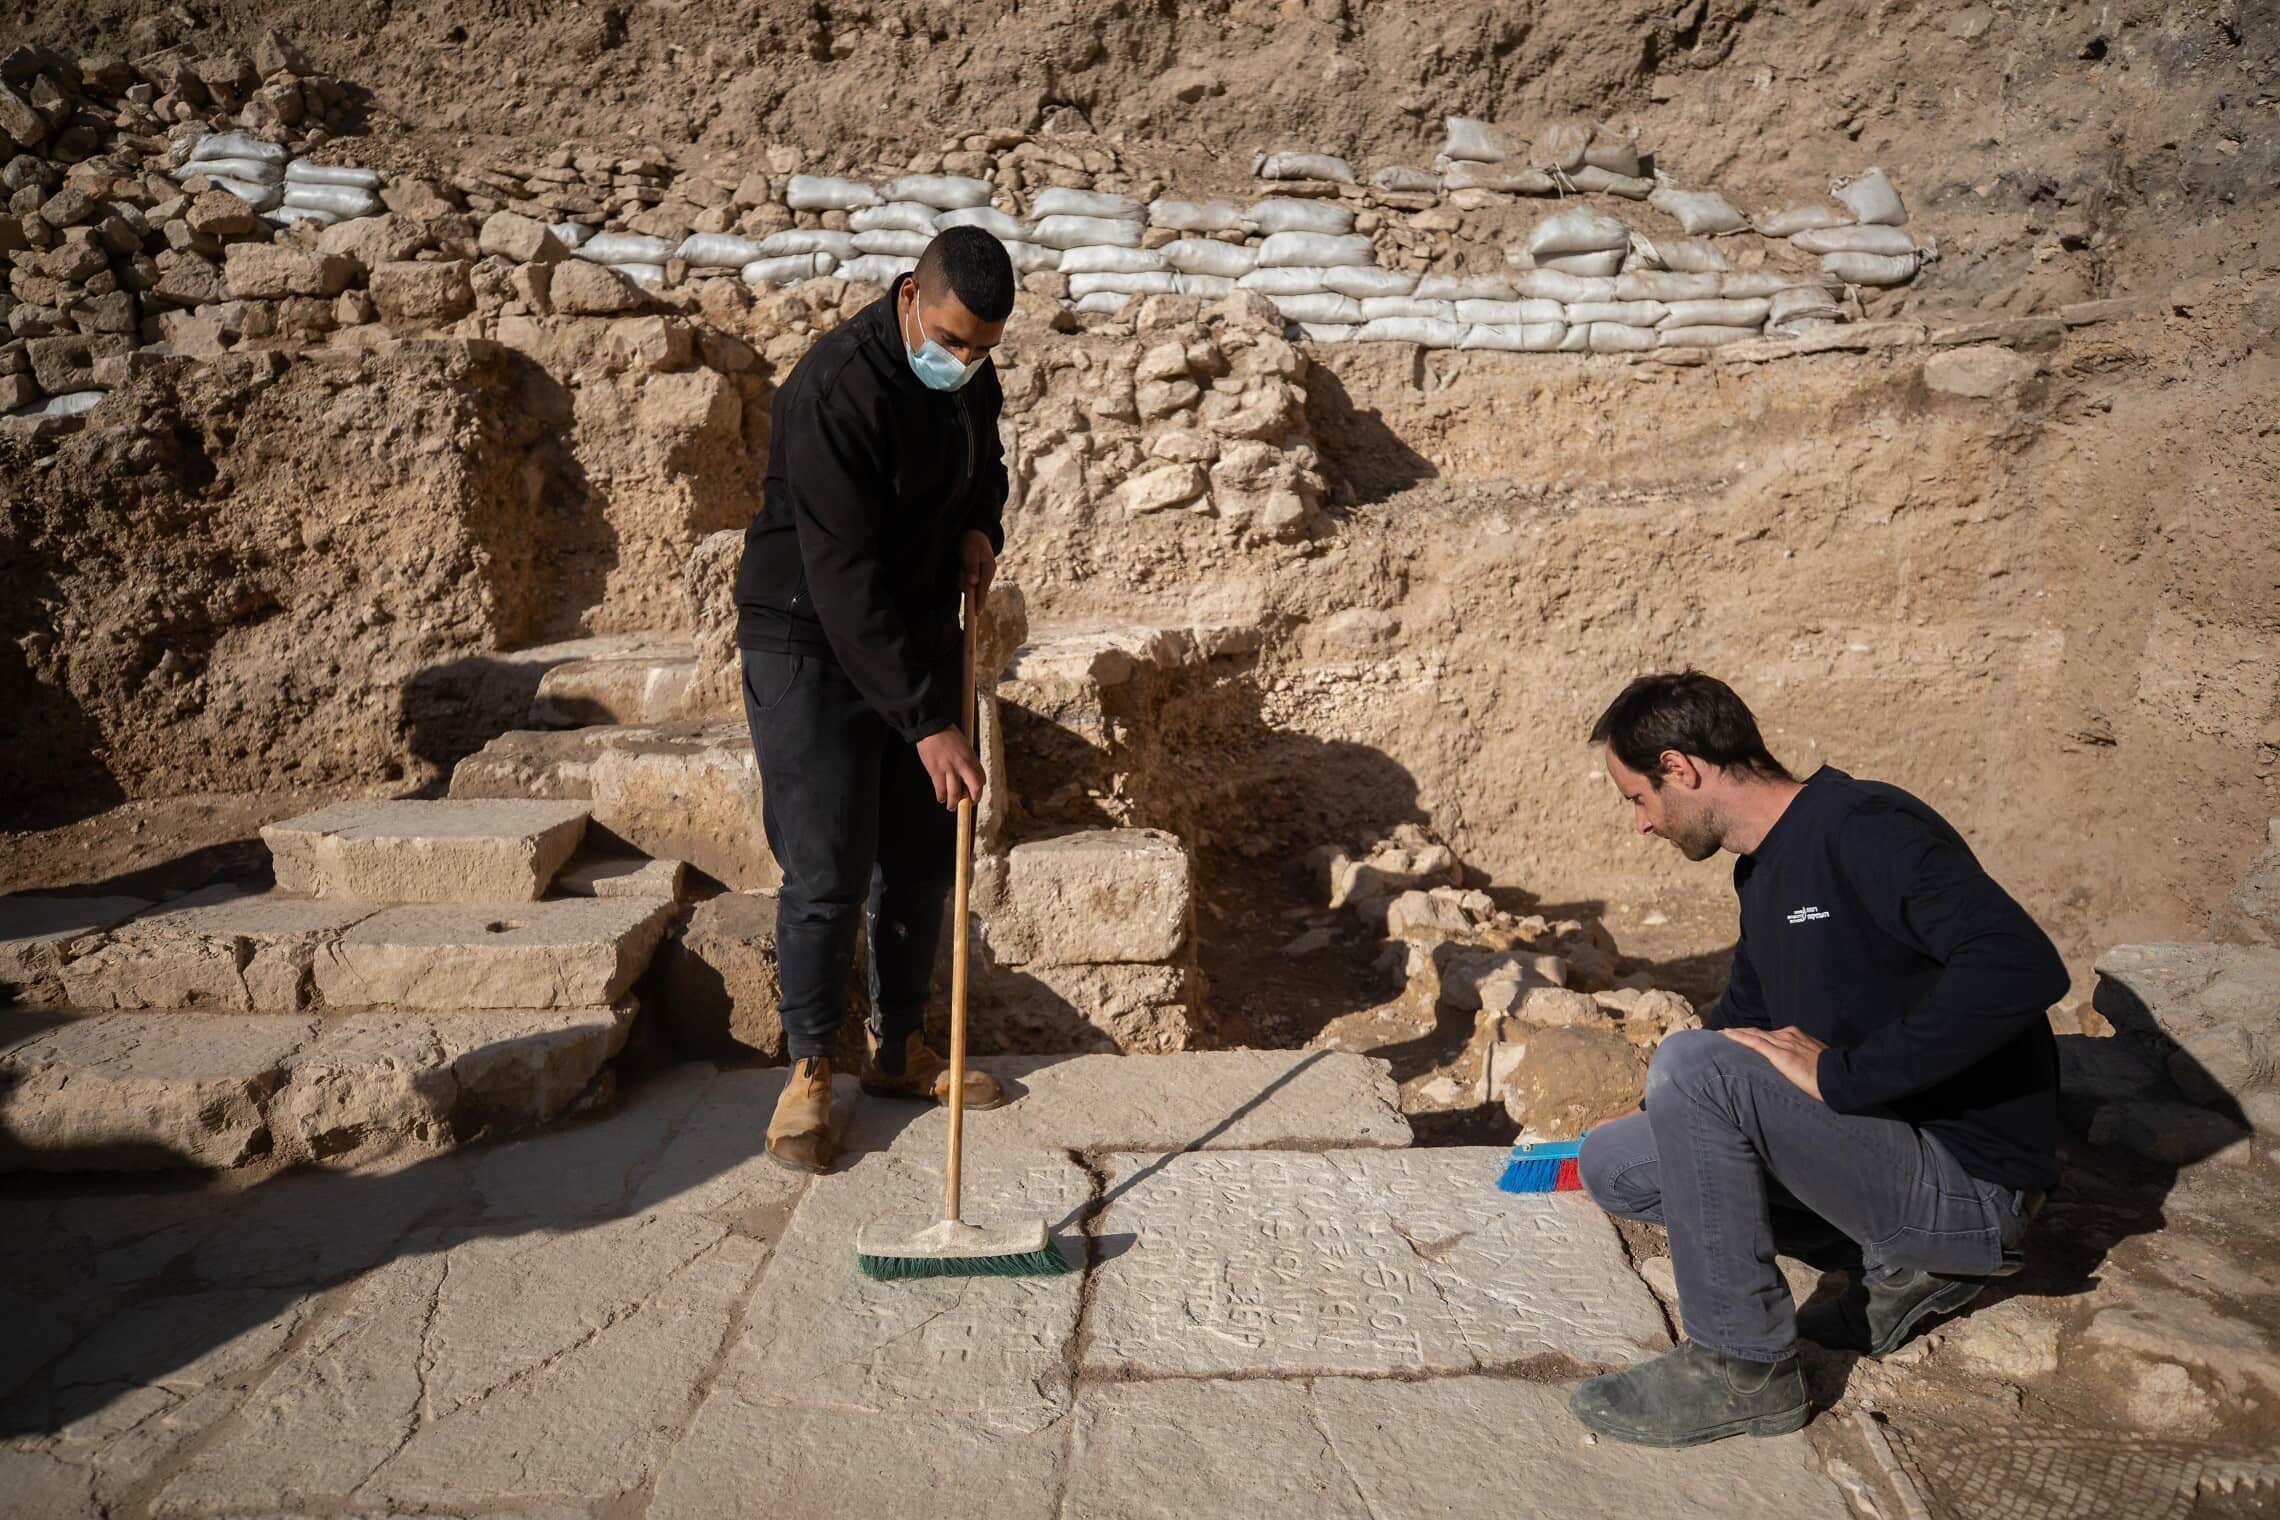 חפירות של רשות העתיקות בכנסיה מהמאה ה-6 לספירה (התקופה הביזנטית) במתחם של כנסיית גת שמנים מחוץ לעיר העתיקה בירושלים. דצמבר 2020 (צילום: Yonatan Sindel/Flash90)